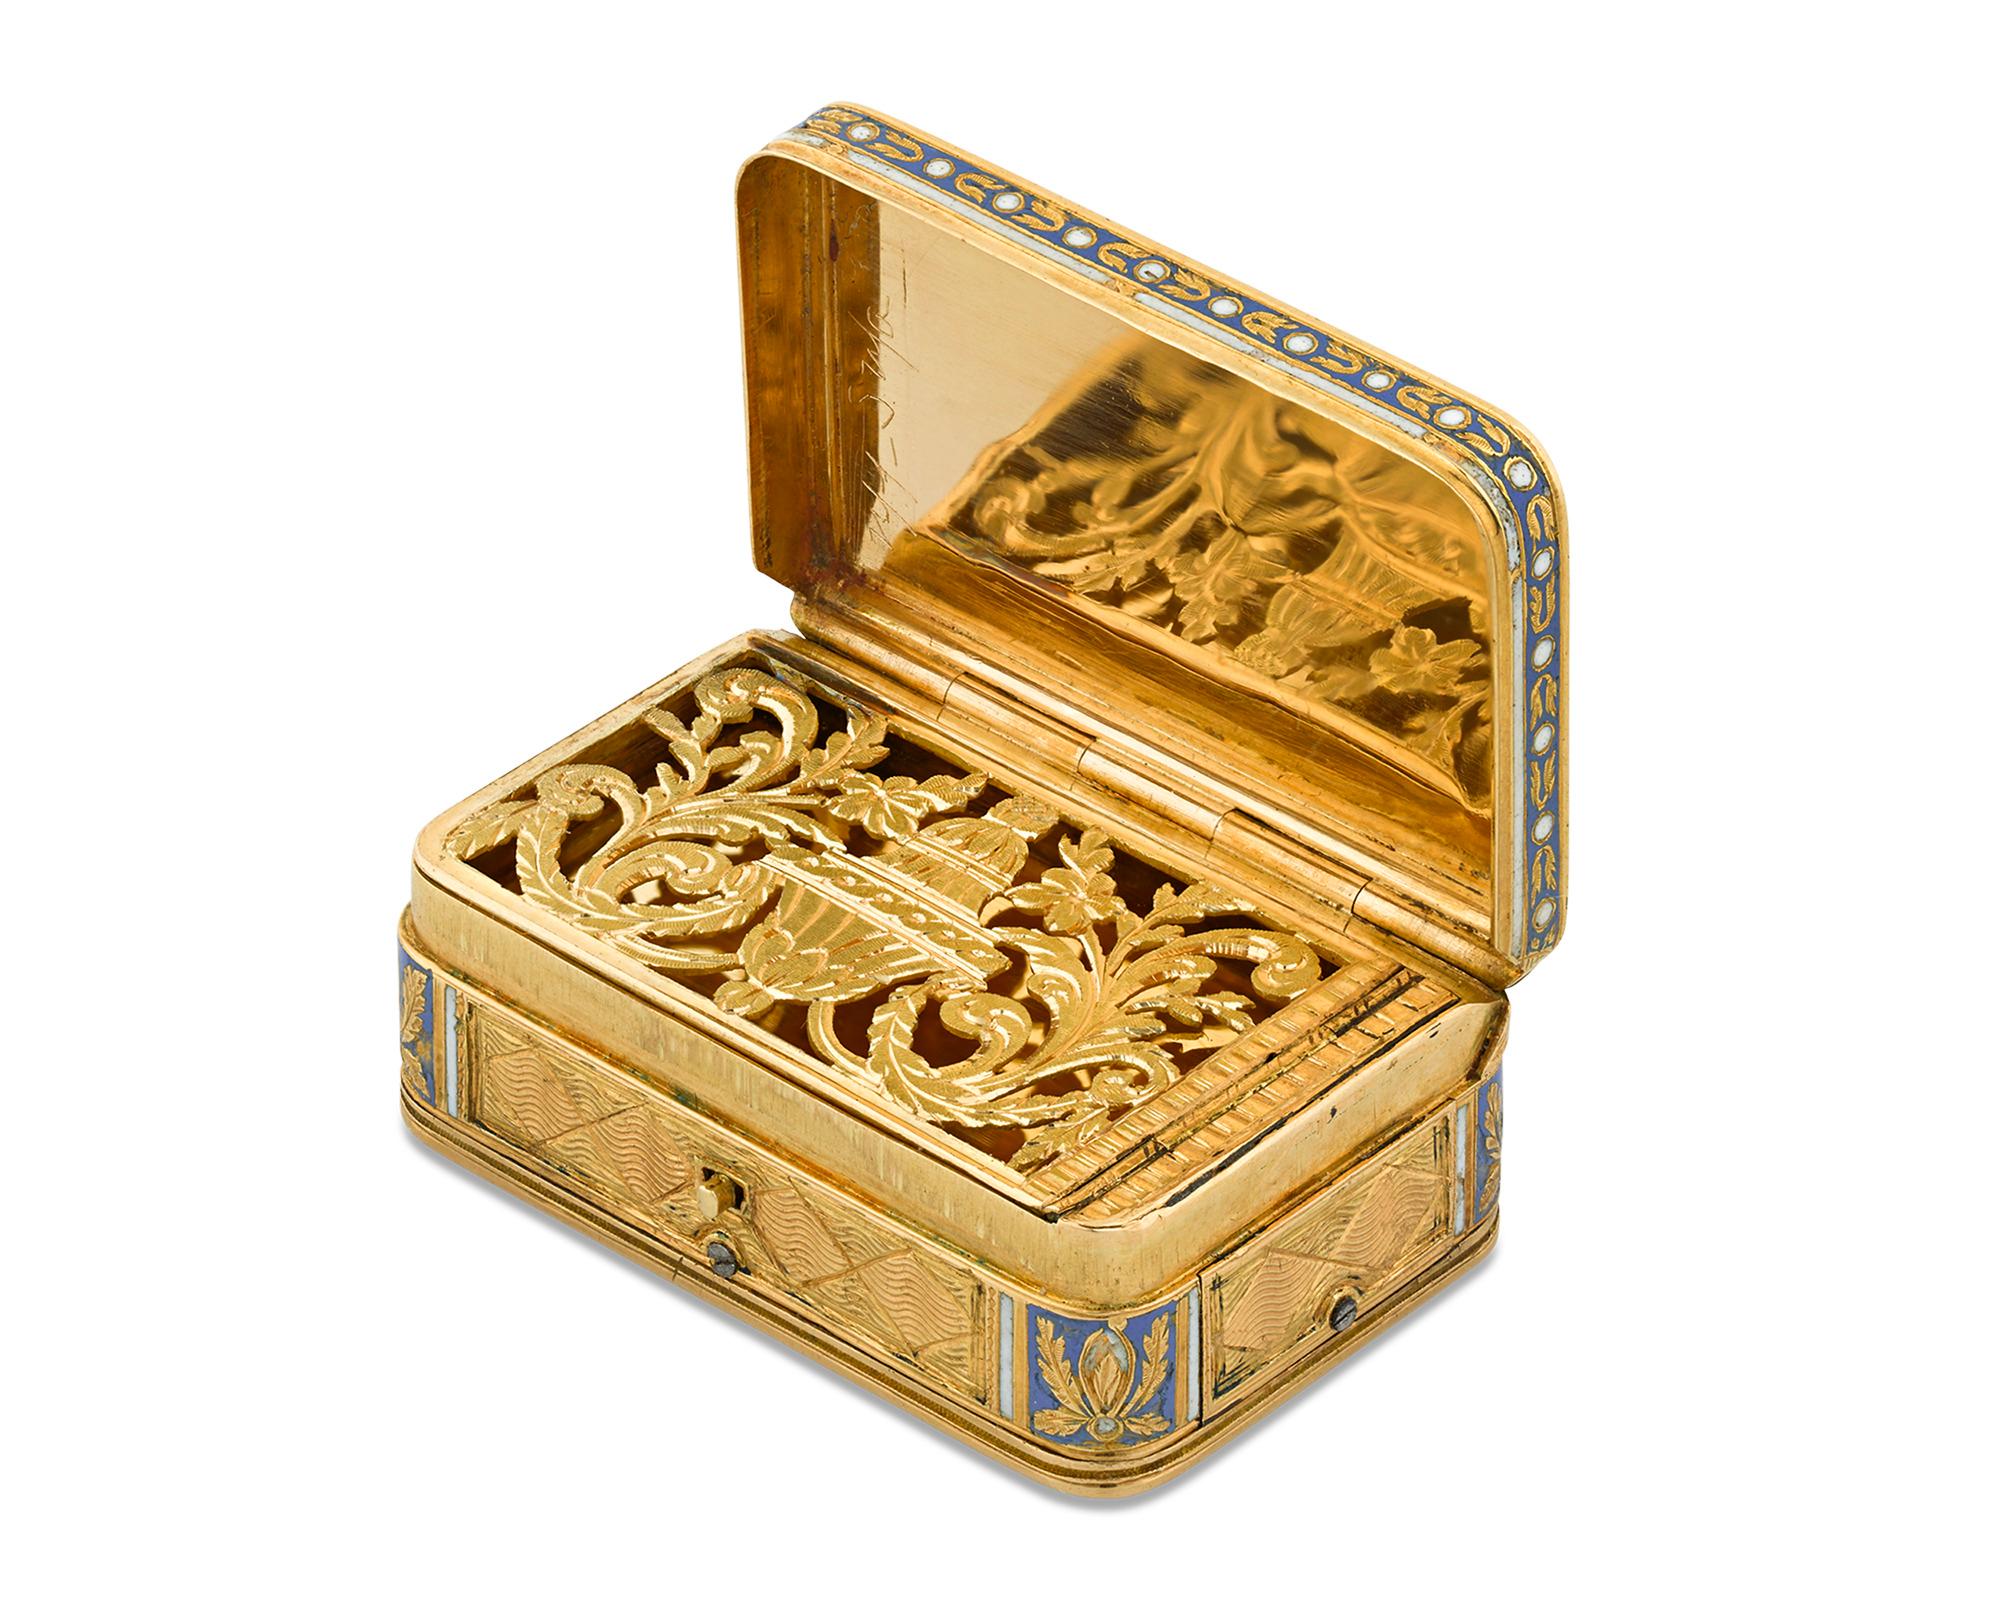 Un mouvement musical distingue cette merveilleuse boîte à vinaigrette en or du début du XIXe siècle. Le récipient est recouvert d'une délicate gravure soulignée par un émail champlevé bleu et blanc détaillé dans un fin motif floral. Le bouton situé